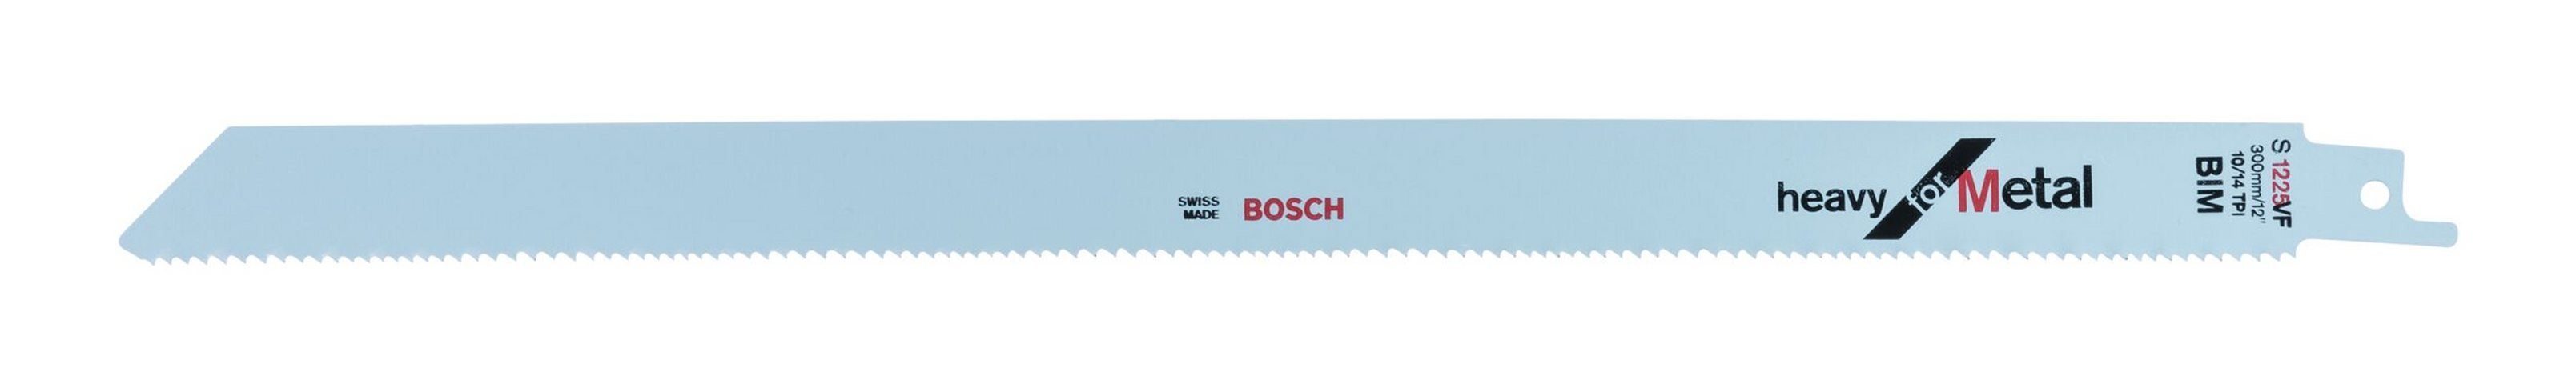 Stück), BOSCH - S Säbelsägeblatt Metal 1225 Heavy for VF 5er-Pack (5